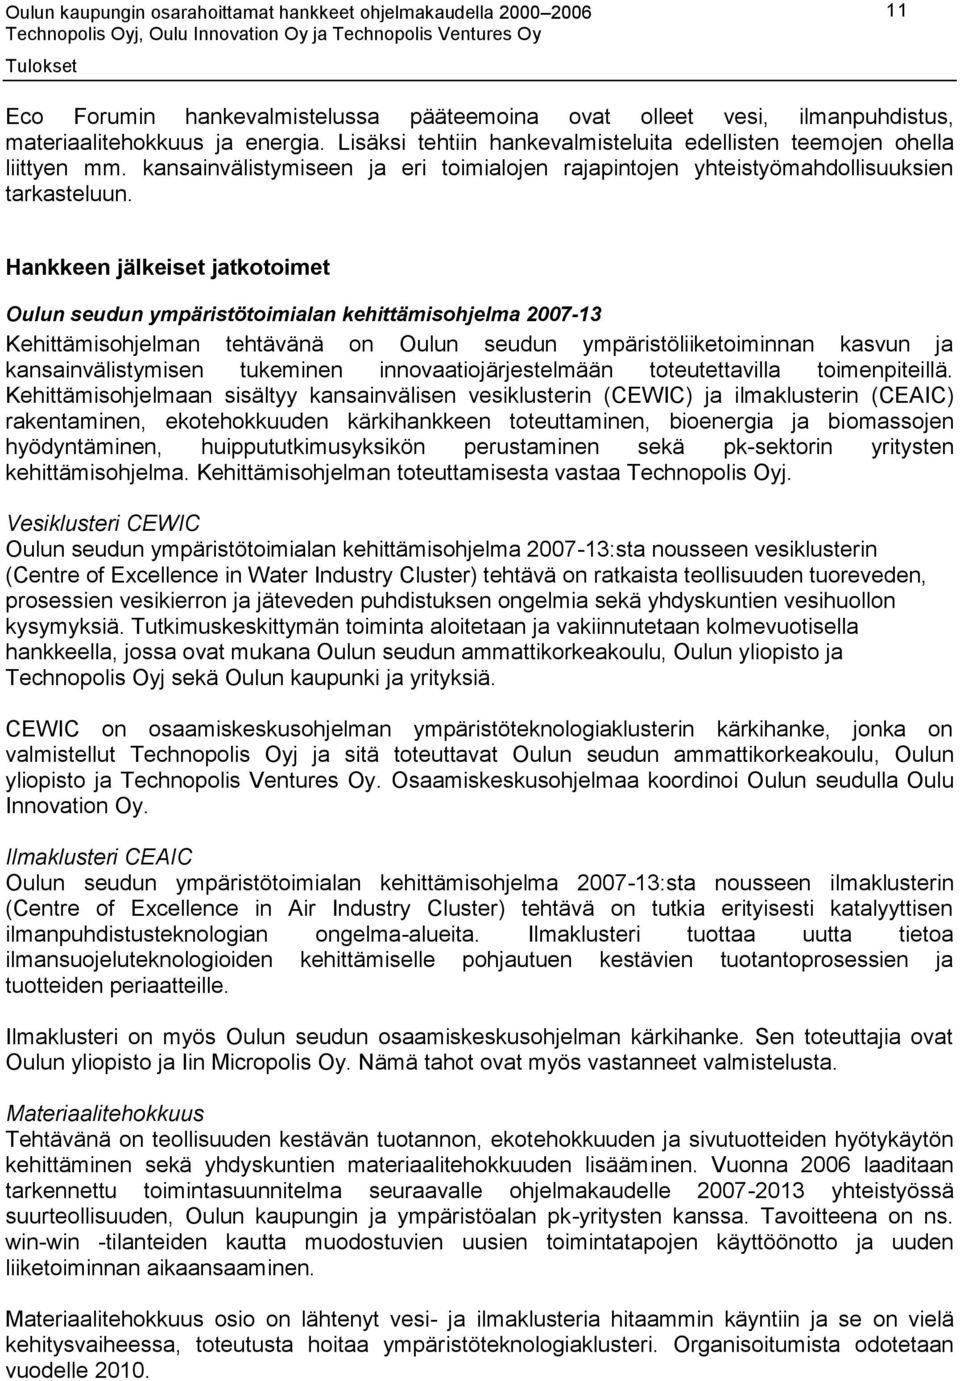 Hankkeen jälkeiset jatkotoimet Oulun seudun ympäristötoimialan kehittämisohjelma 2007-13 Kehittämisohjelman tehtävänä on Oulun seudun ympäristöliiketoiminnan kasvun ja kansainvälistymisen tukeminen